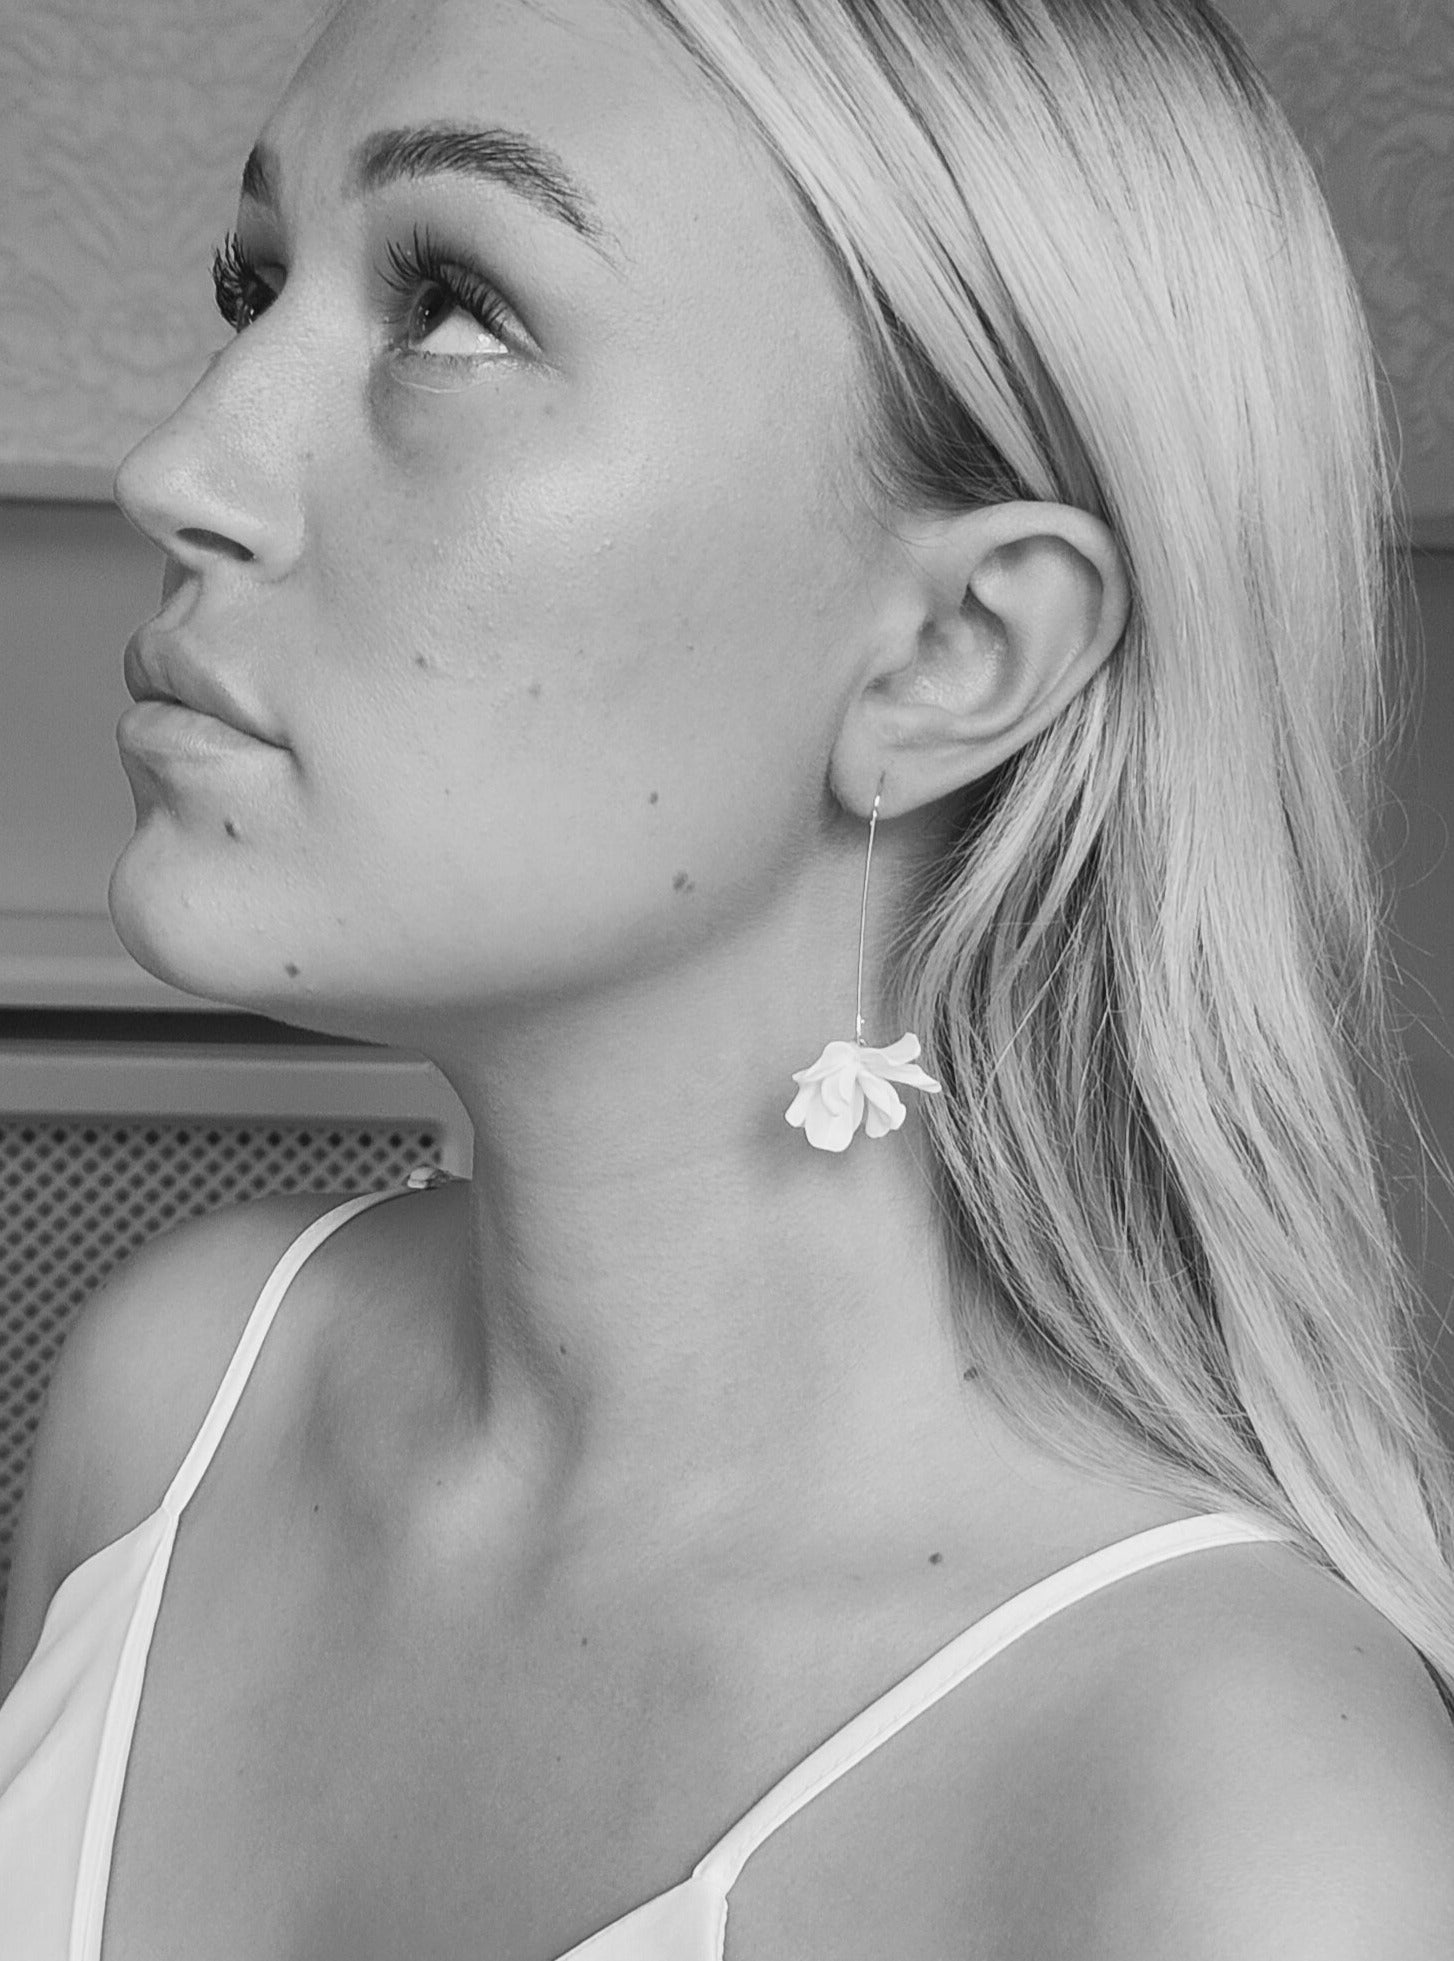 CZ Pear Drop Bridal Earrings - Cassandra Lynne